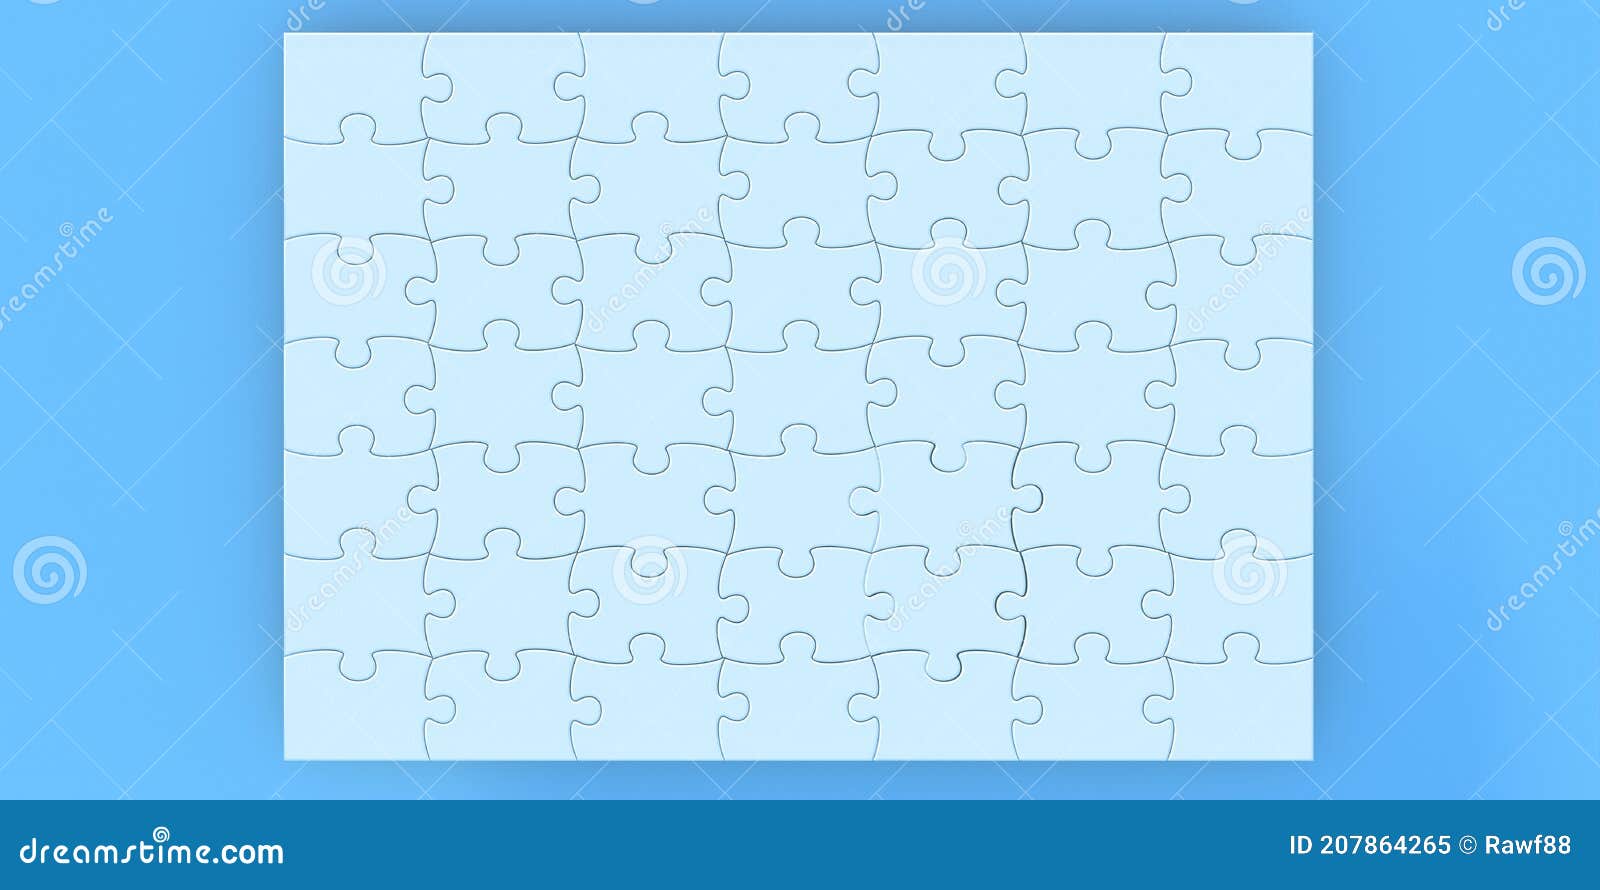 vos Vervallen Modernisering Blanco Tegels Voor Puzzelstukjes Achtergrondraster 7 X 749 Stuks 3d  Illustratie Stock Illustratie - Illustration of zaken, spel: 207864265